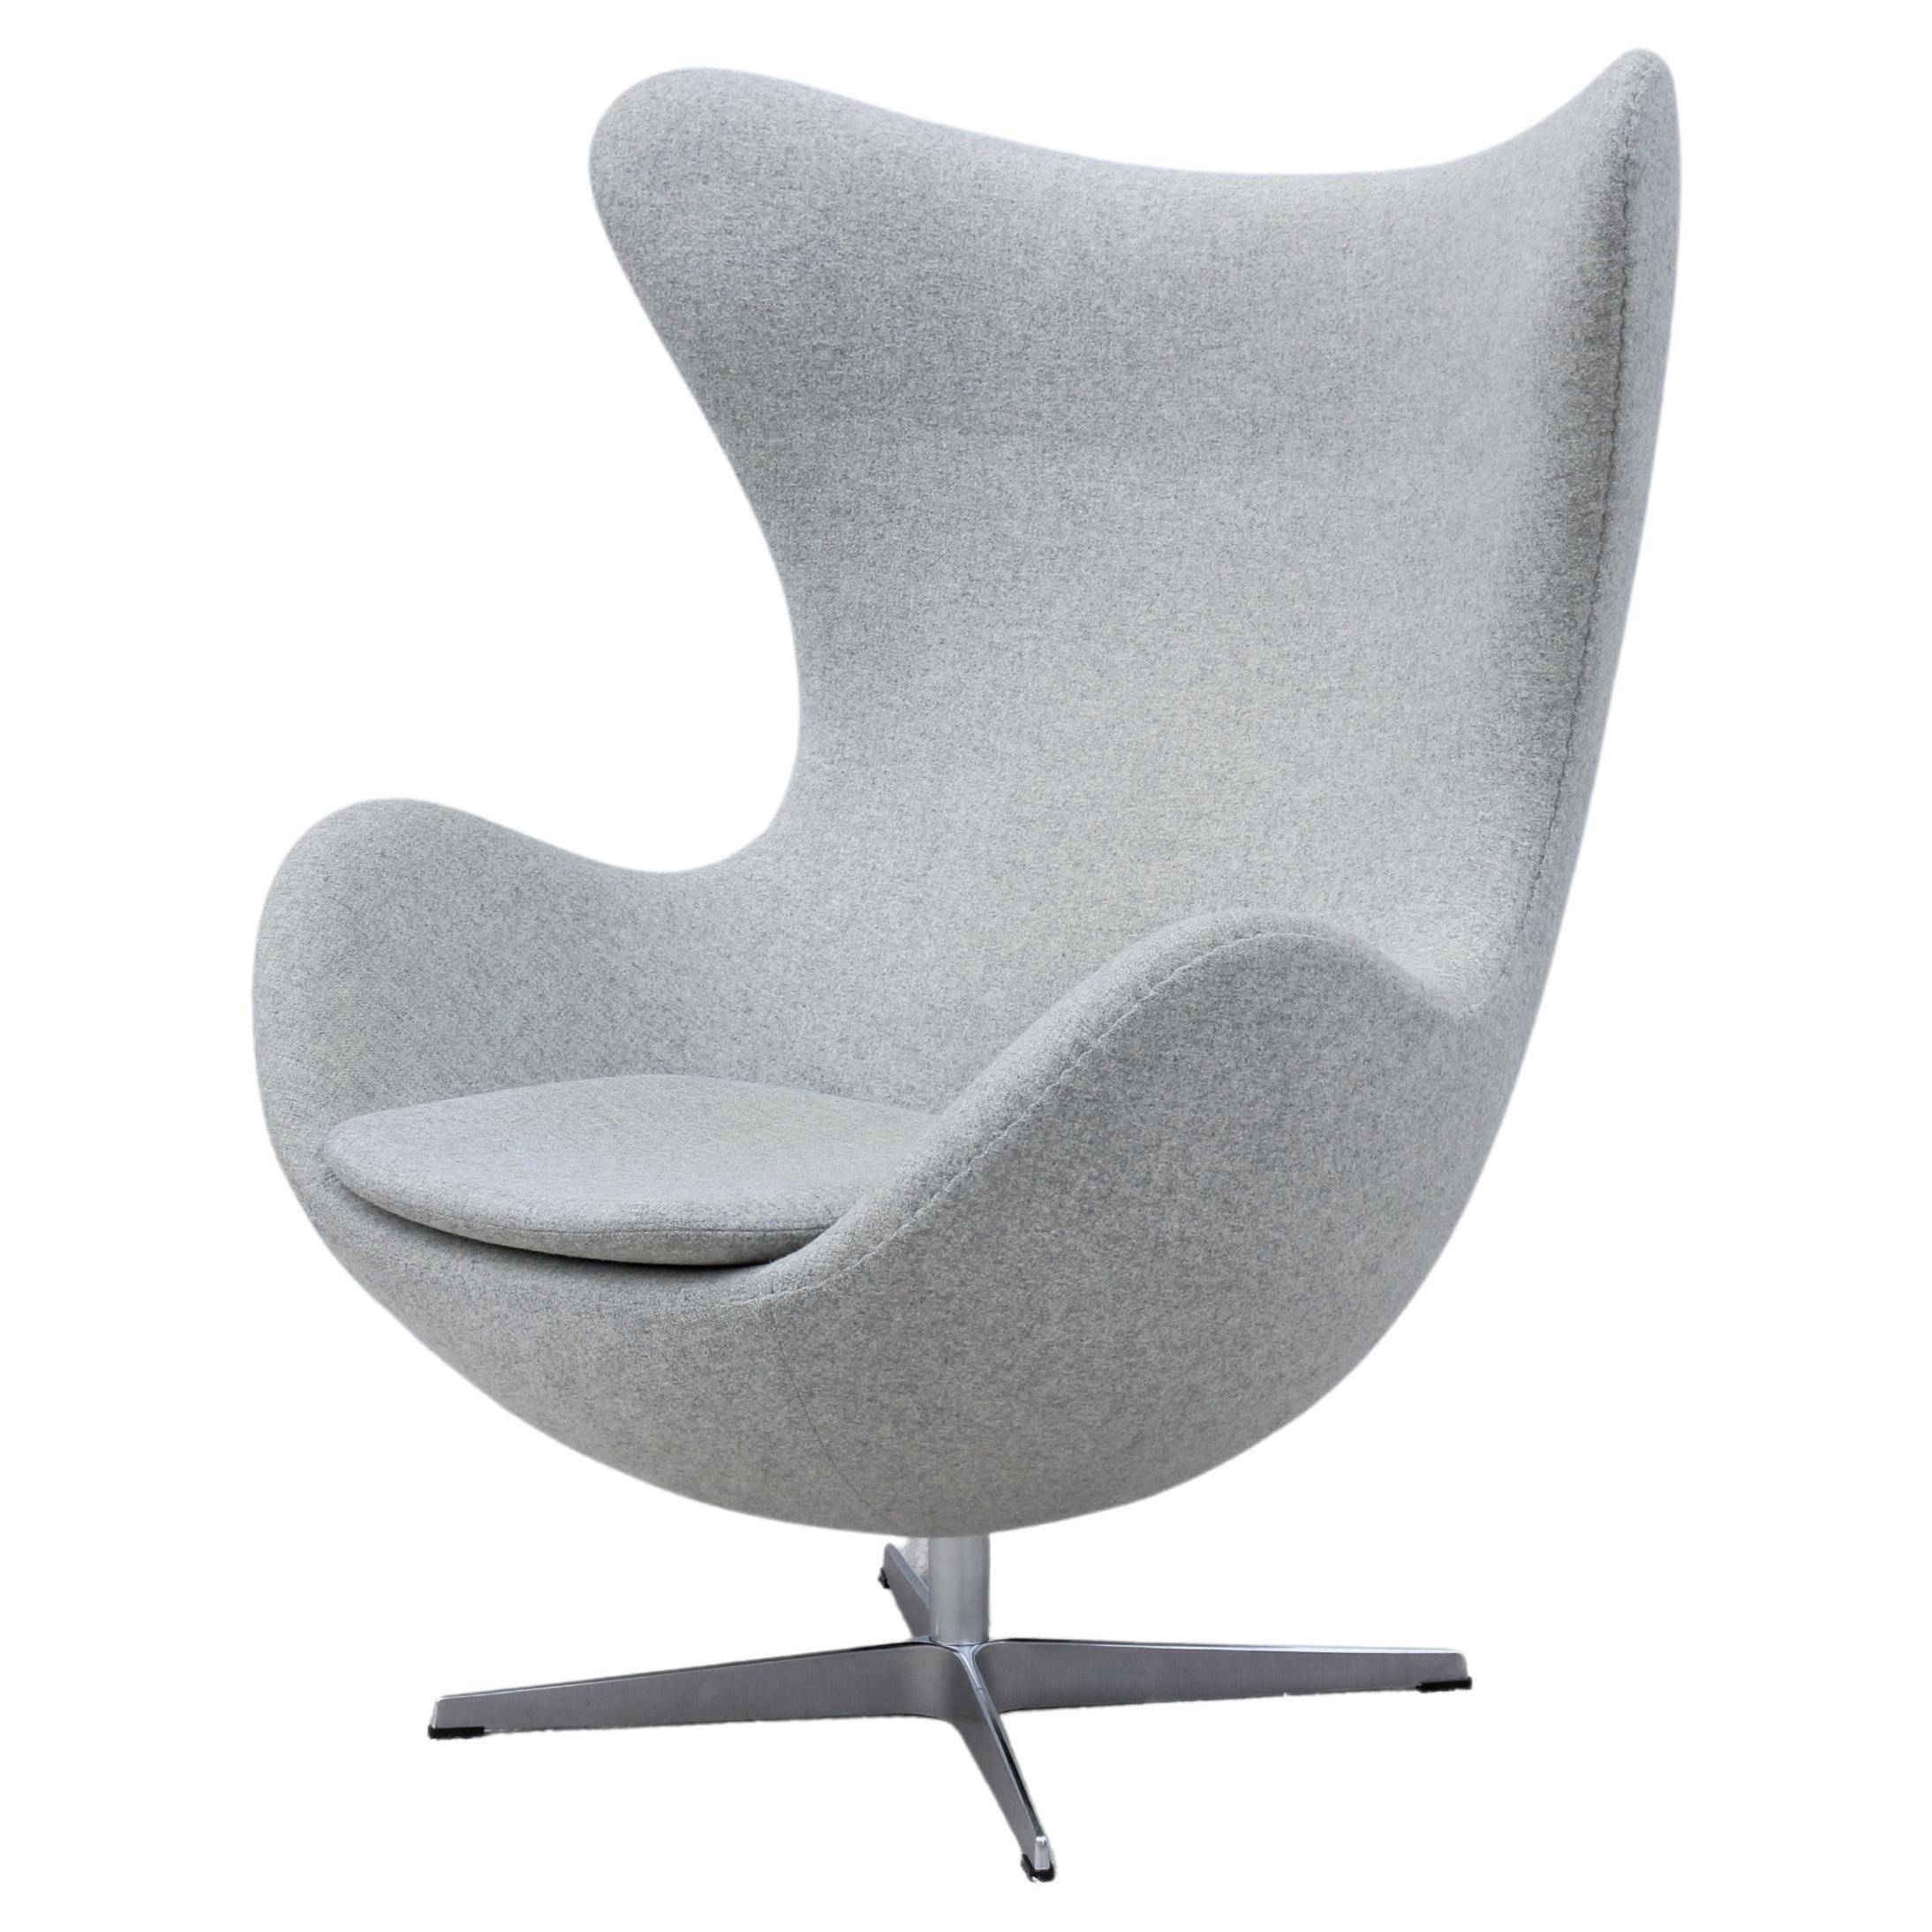 Danish Mid-Century Modern Arne Jacobsen for Fritz Hansen Egg Lounge Chair